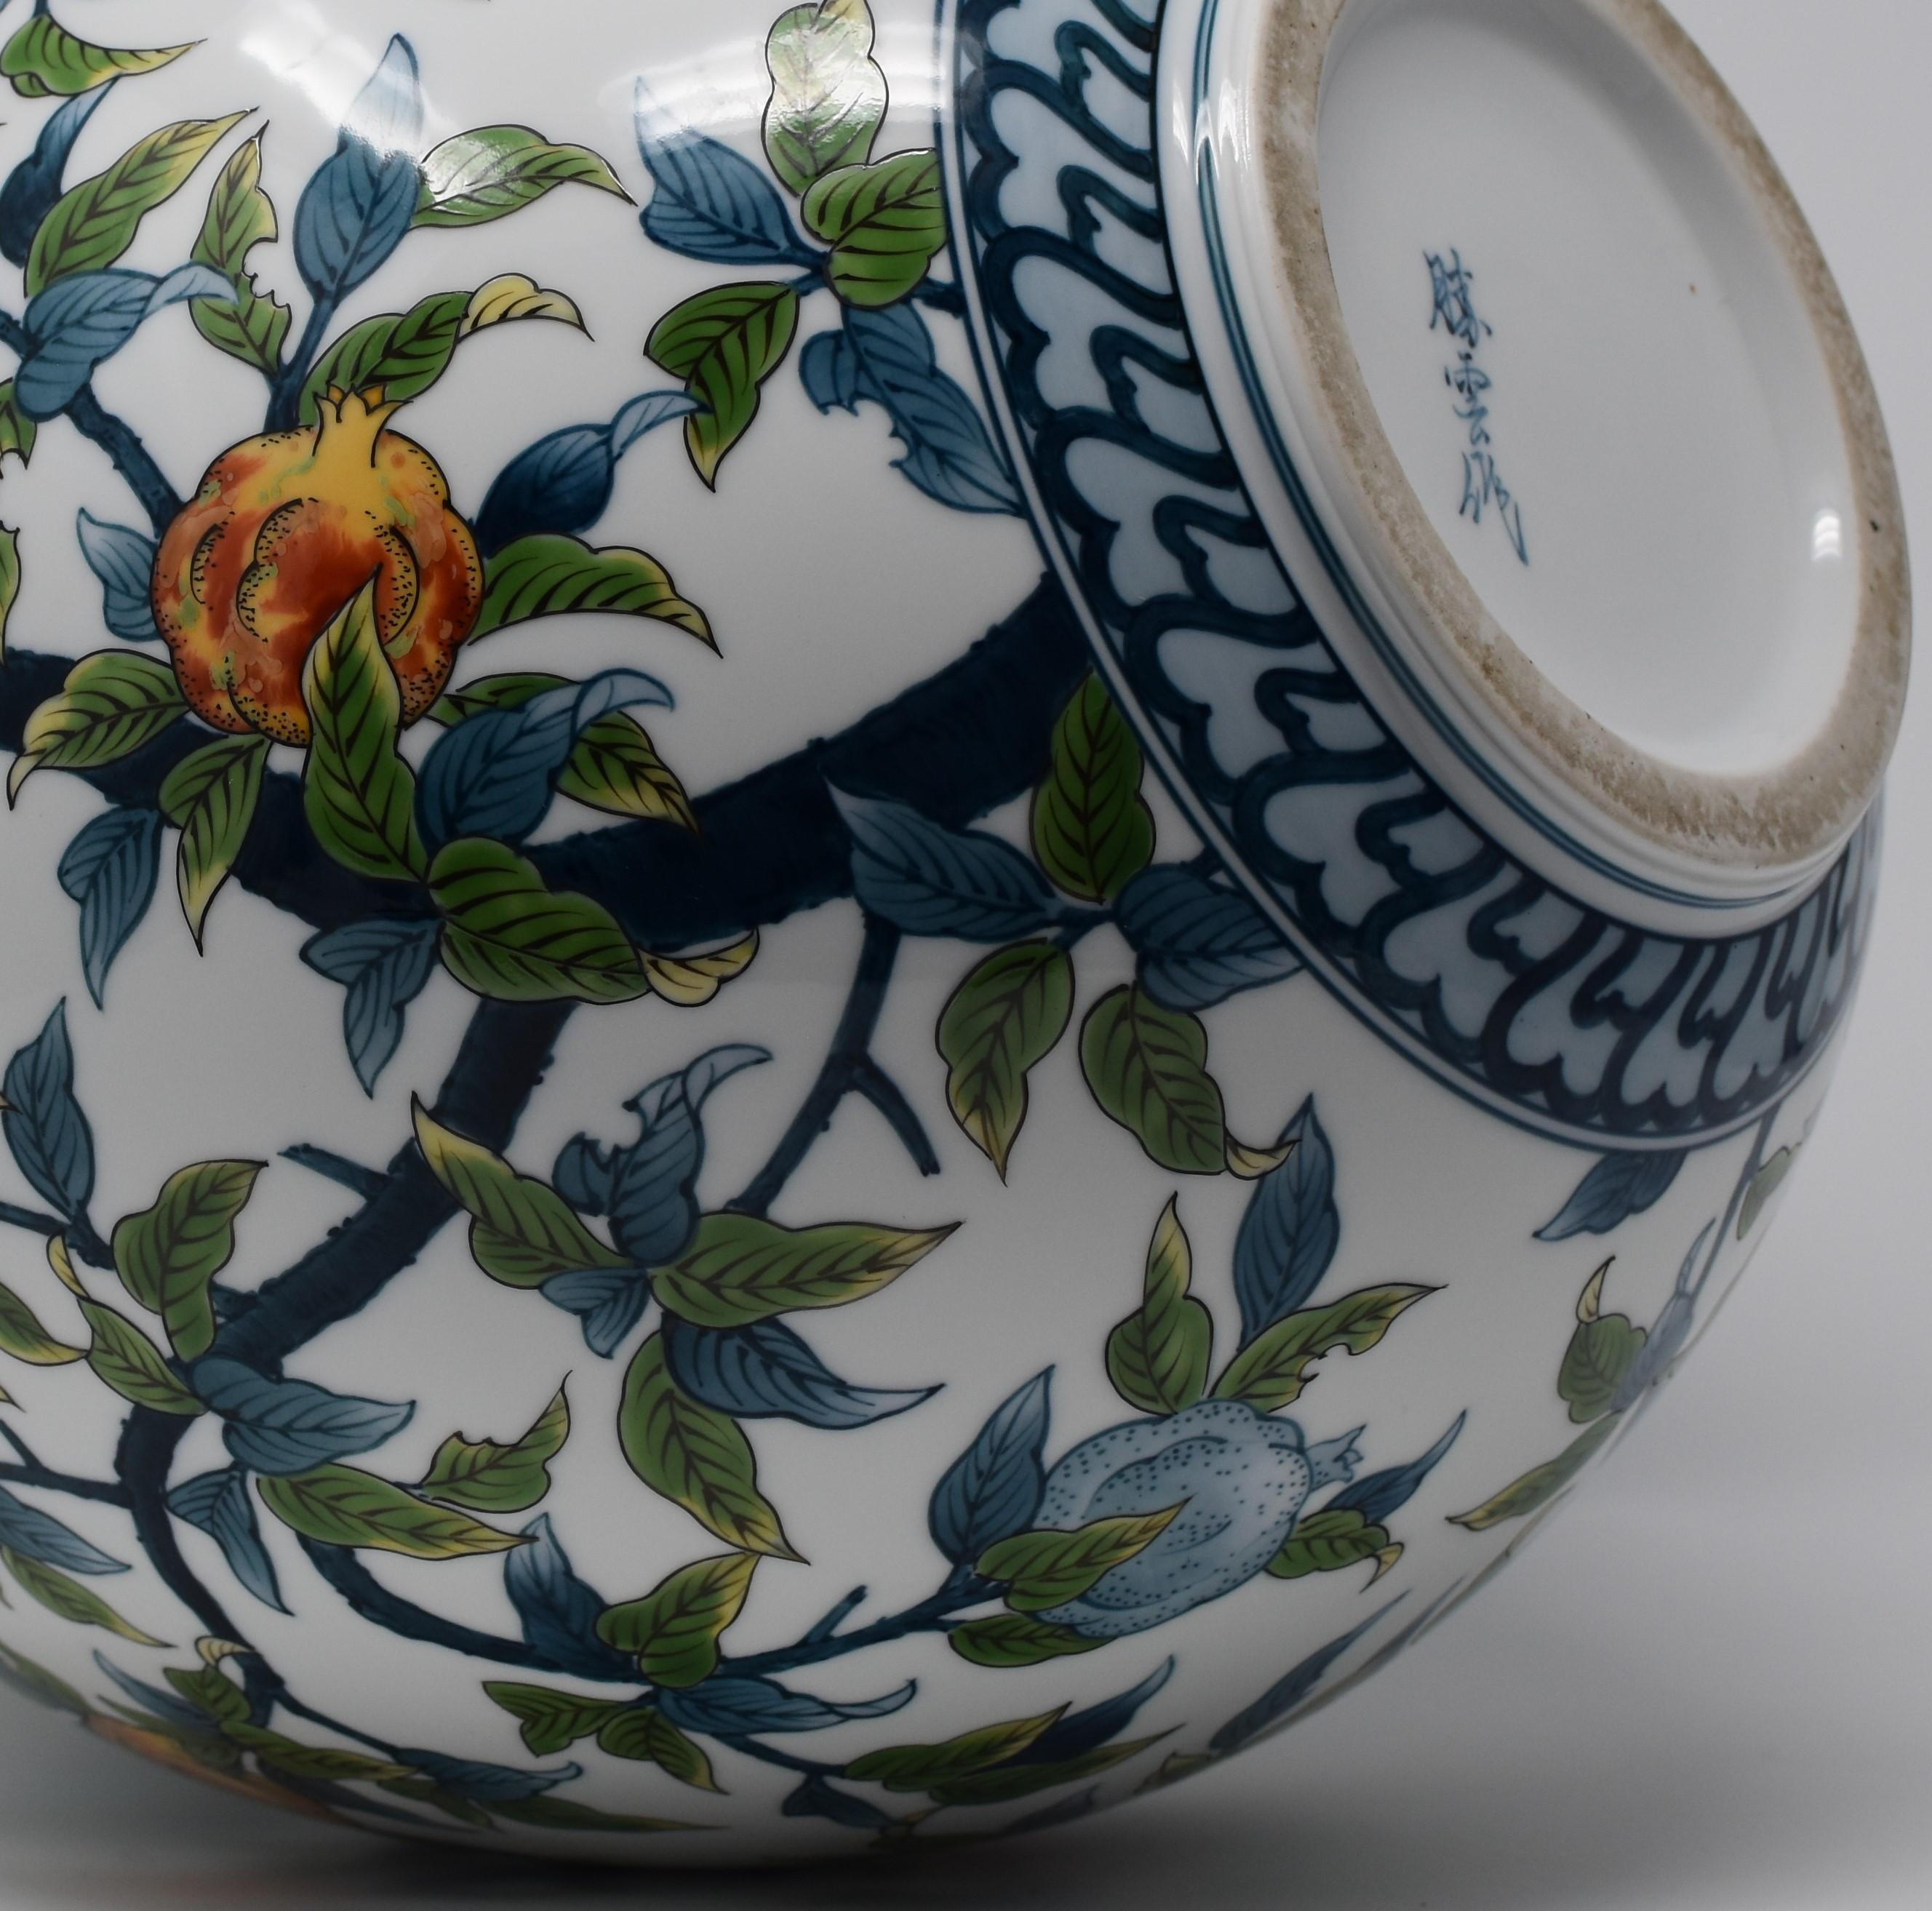  Contempory Imari Large Japanese Decorative Porcelain Vase by Master Artist 2